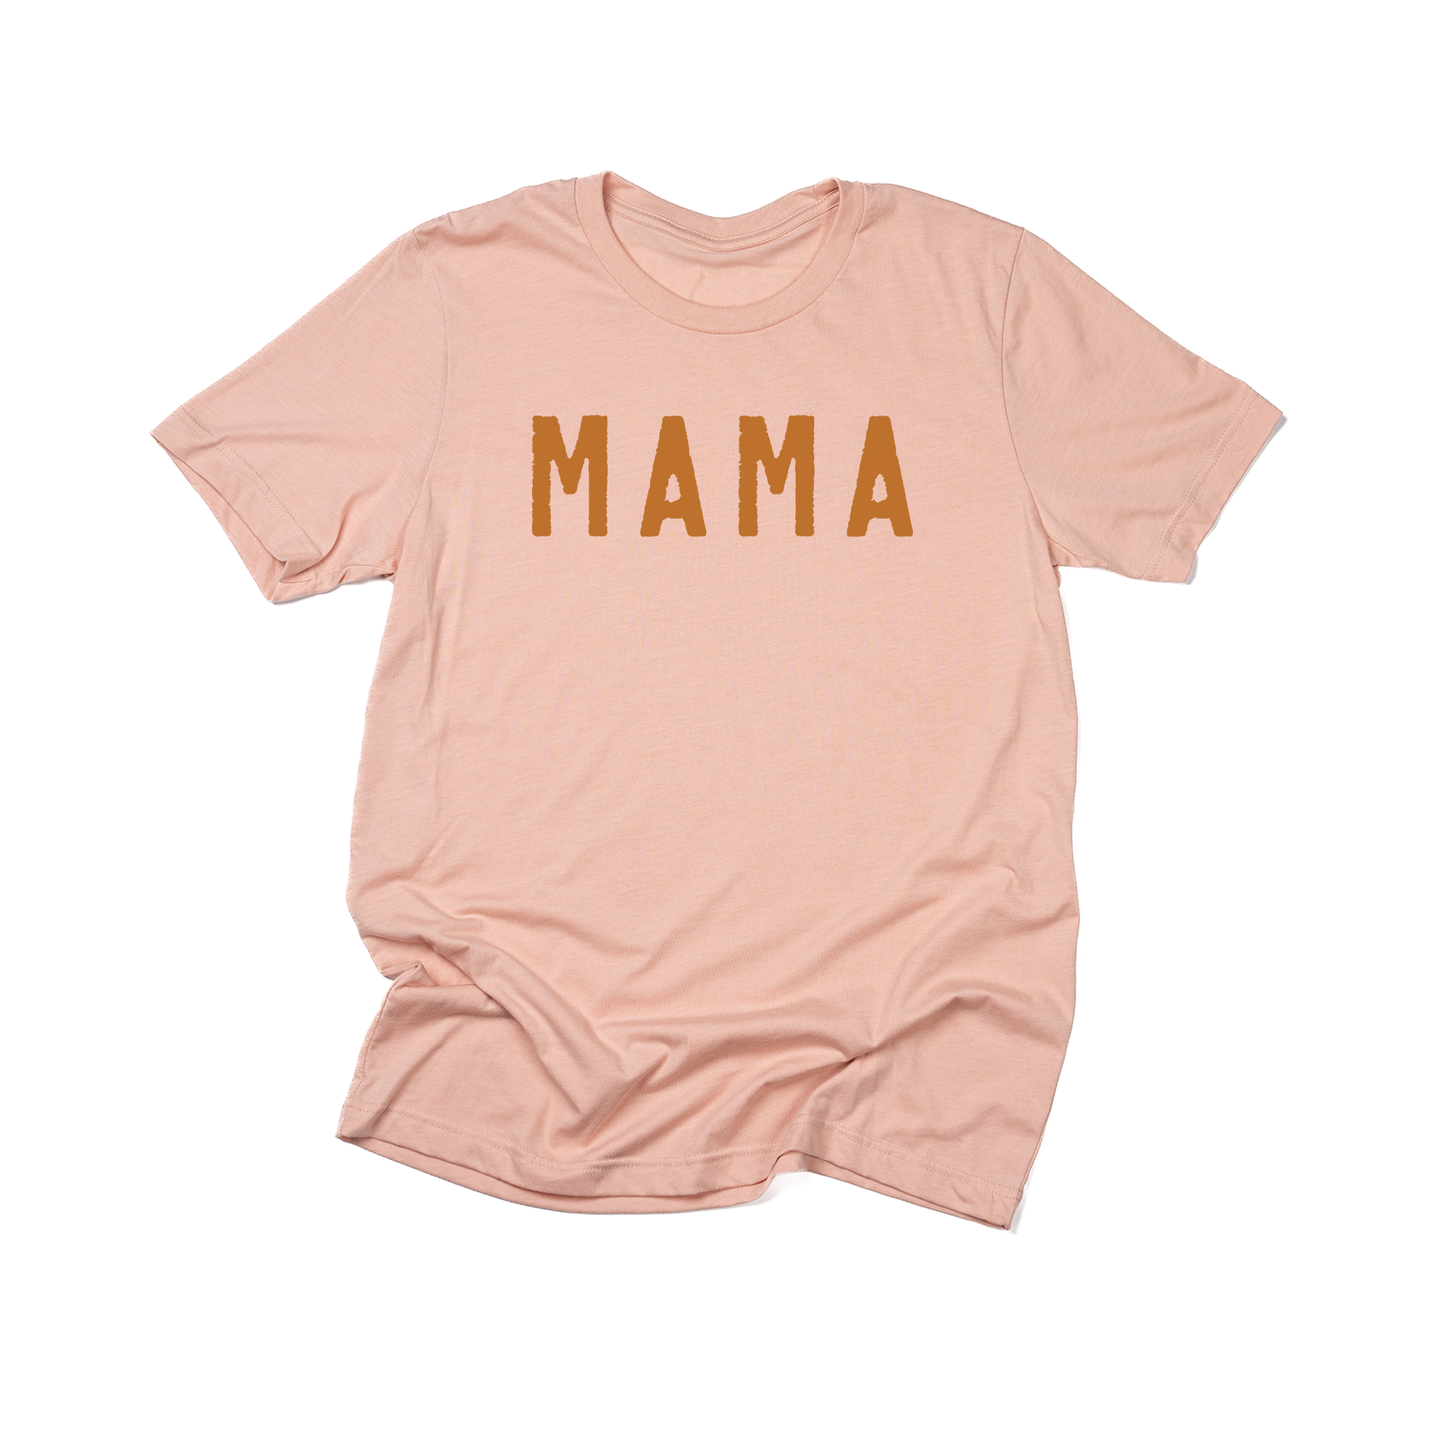 Mama (Rough, Camel) - Tee (Peach)